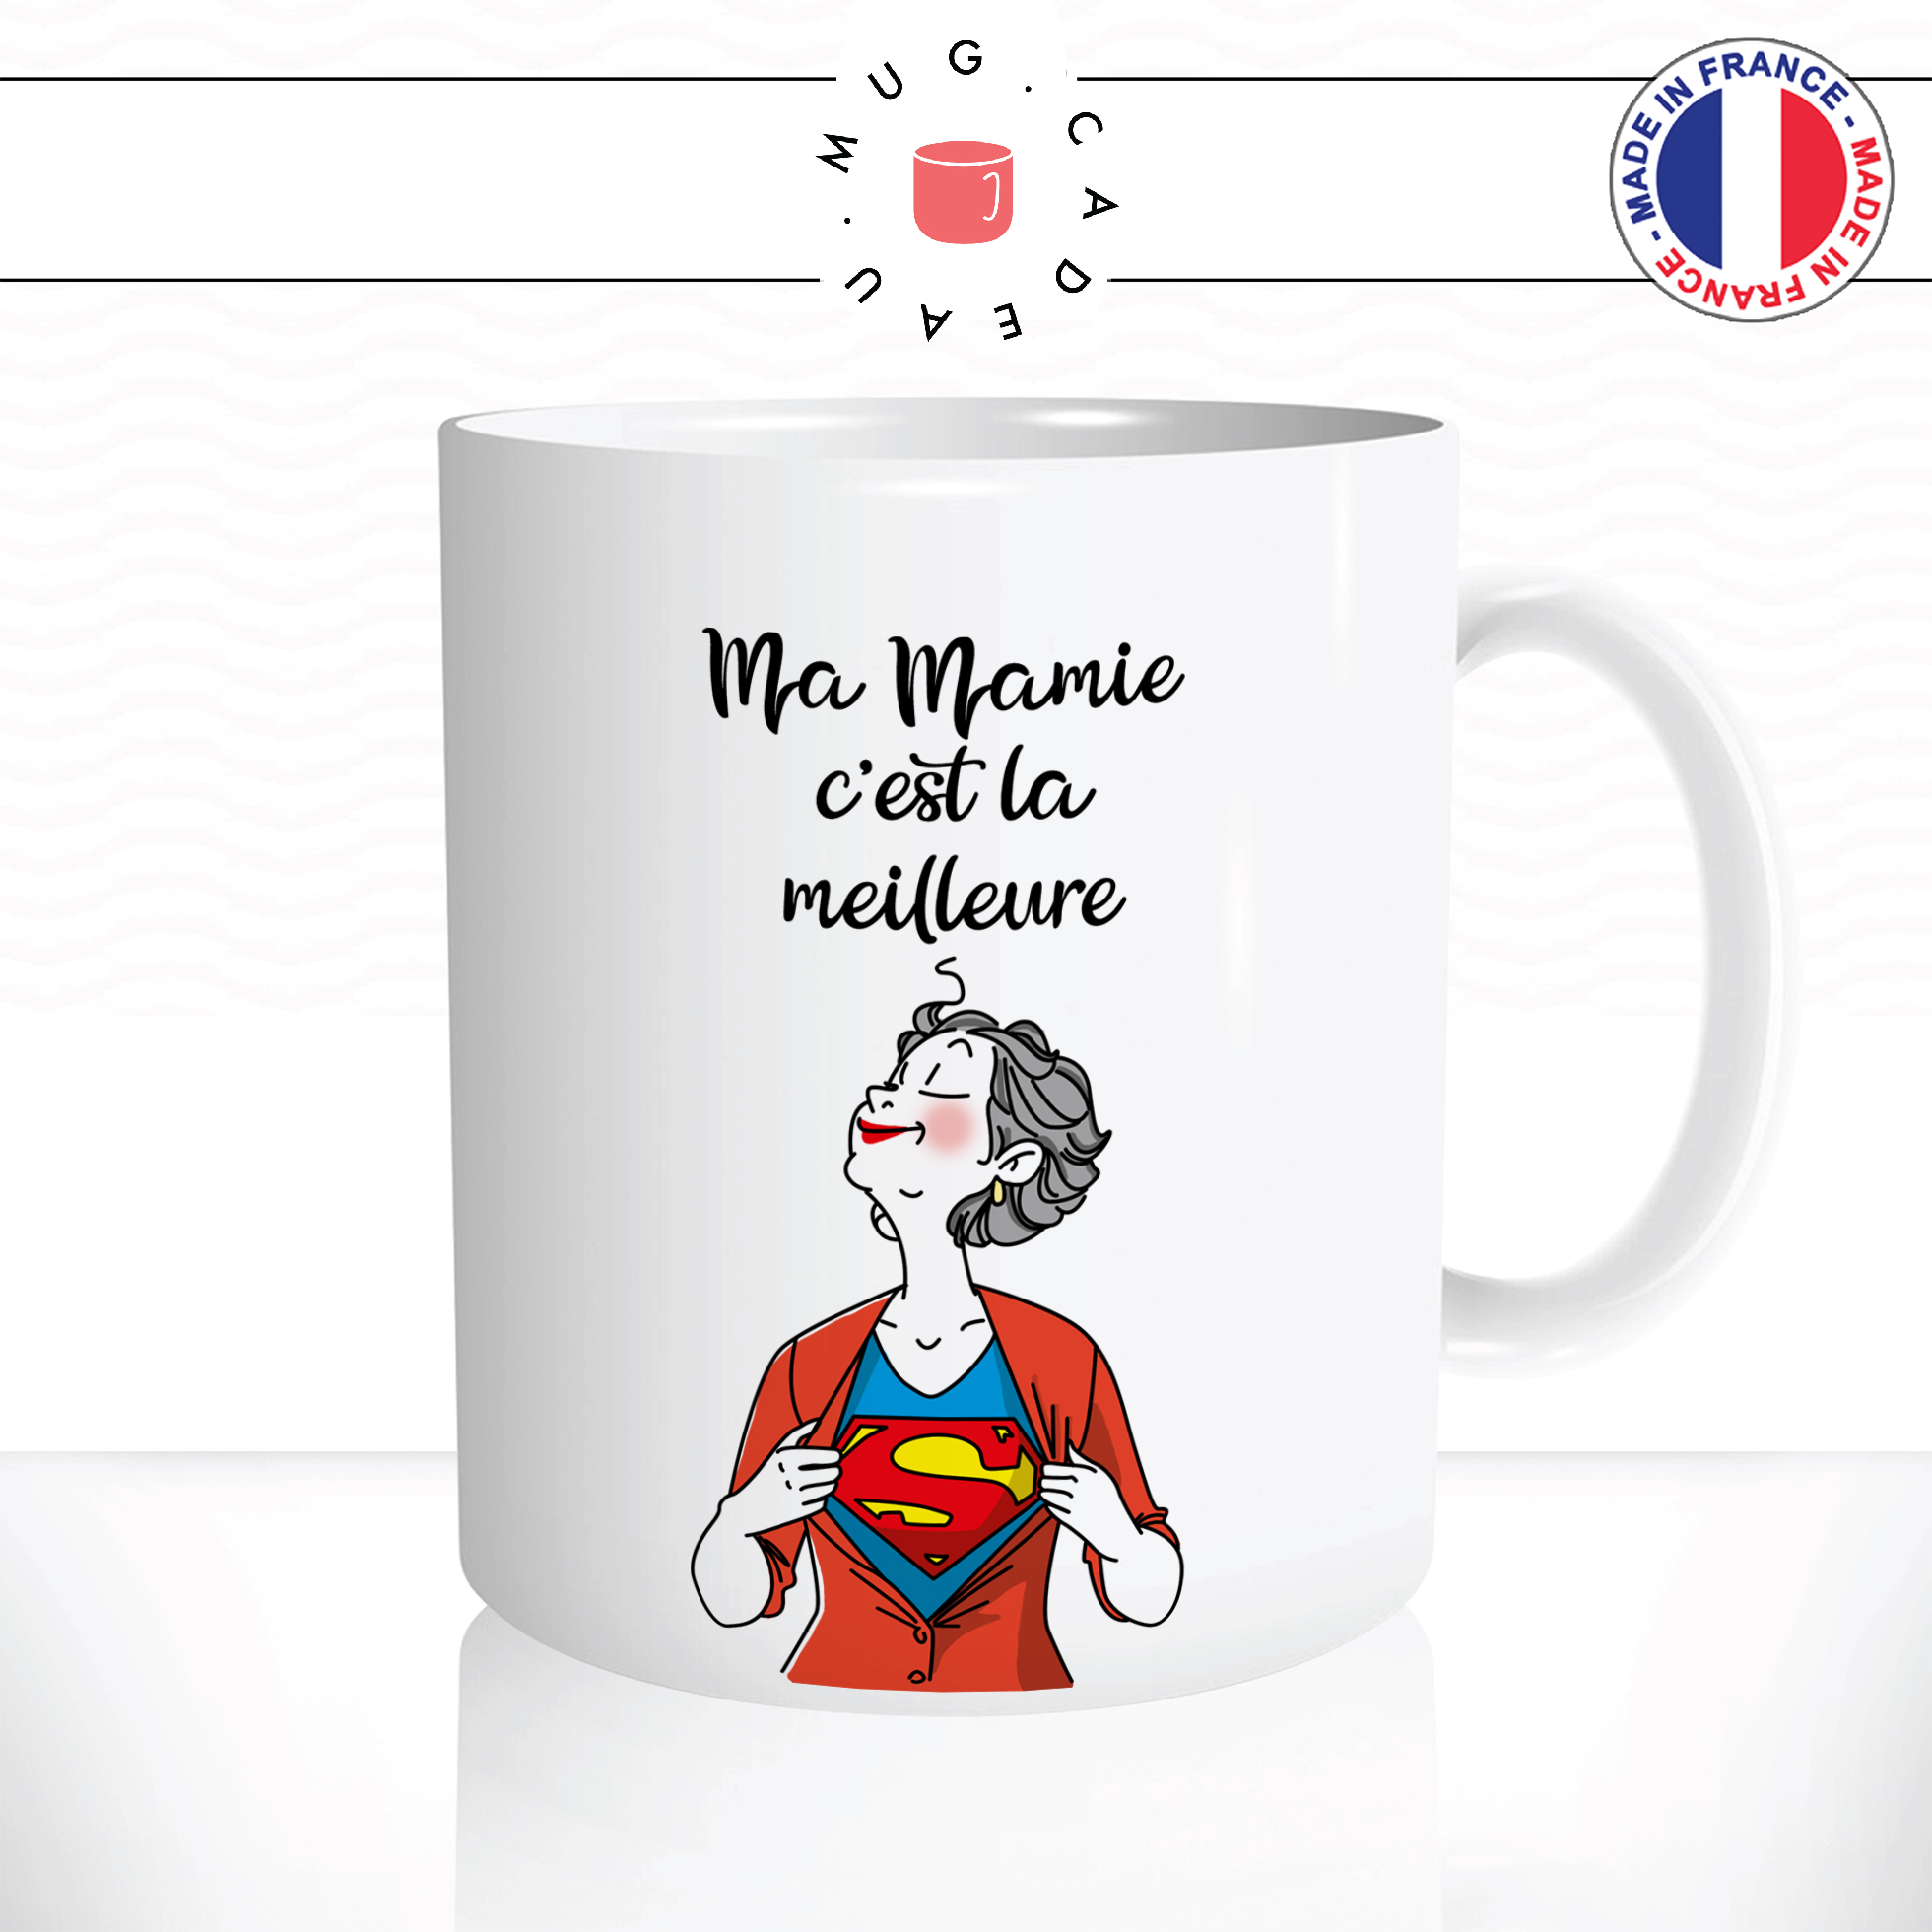 Mug SUPER MAMIE - Le Roi du T-Shirt